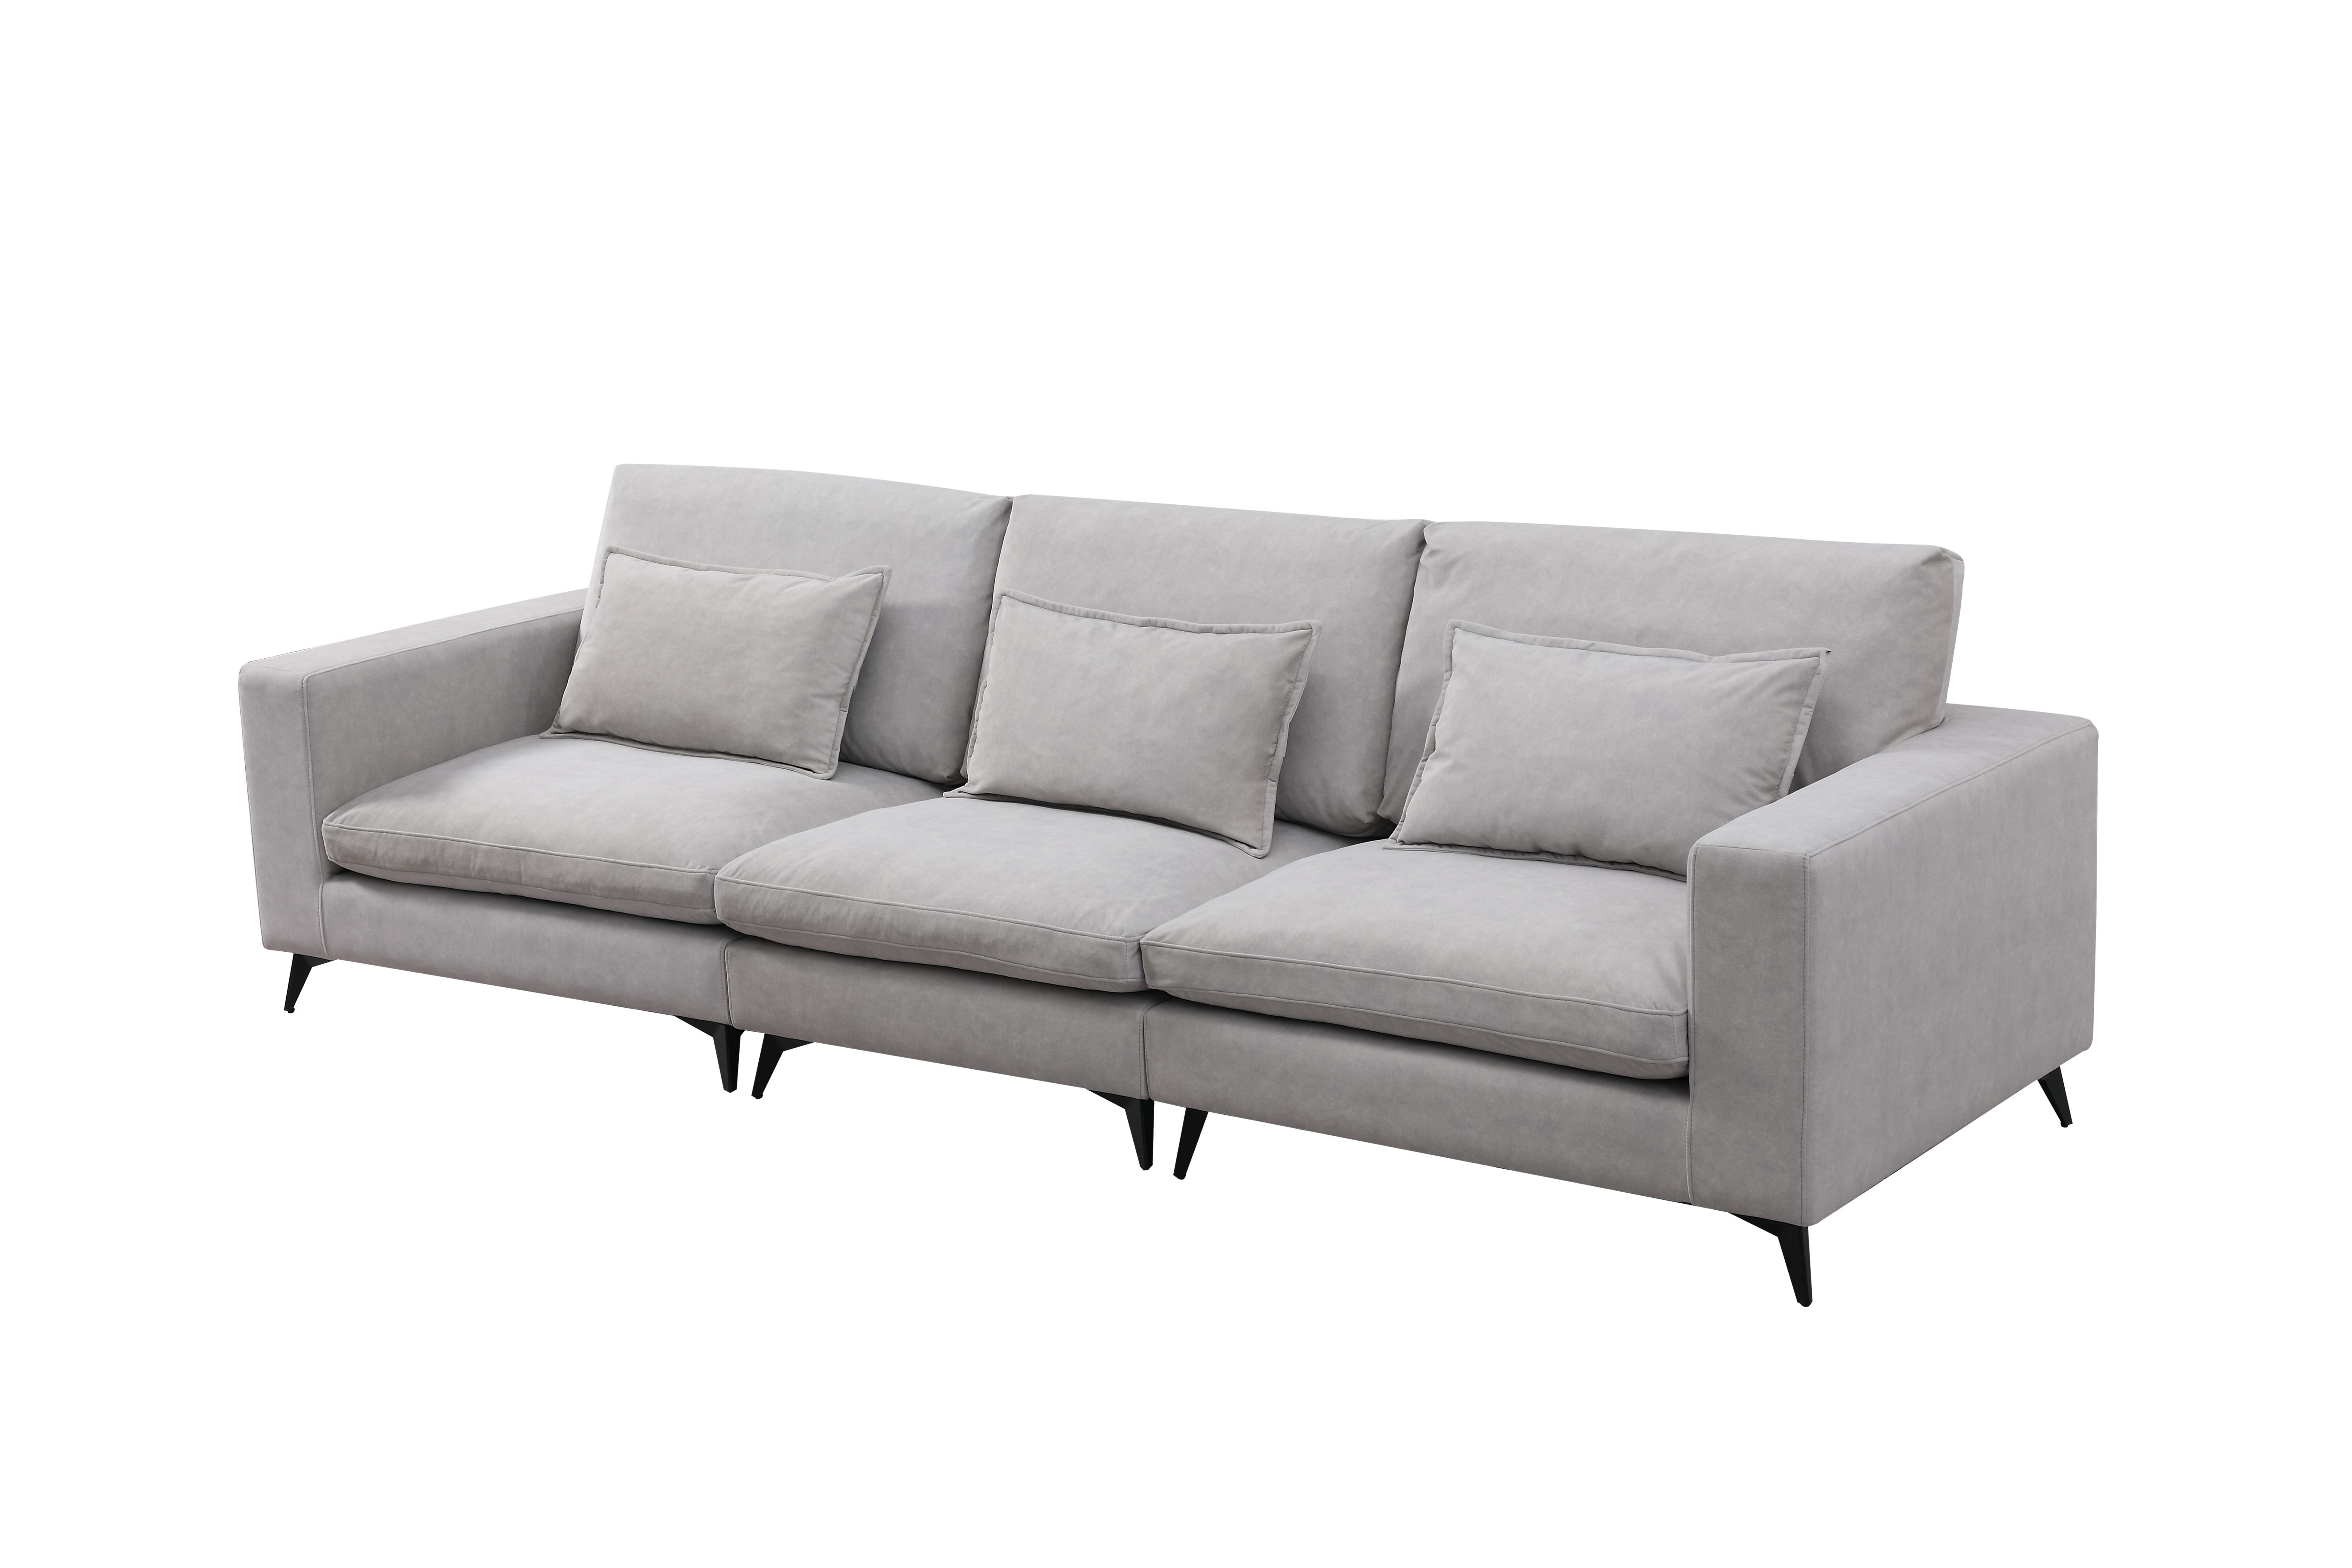 Model 8115  Living room stationary sofa velvet couch